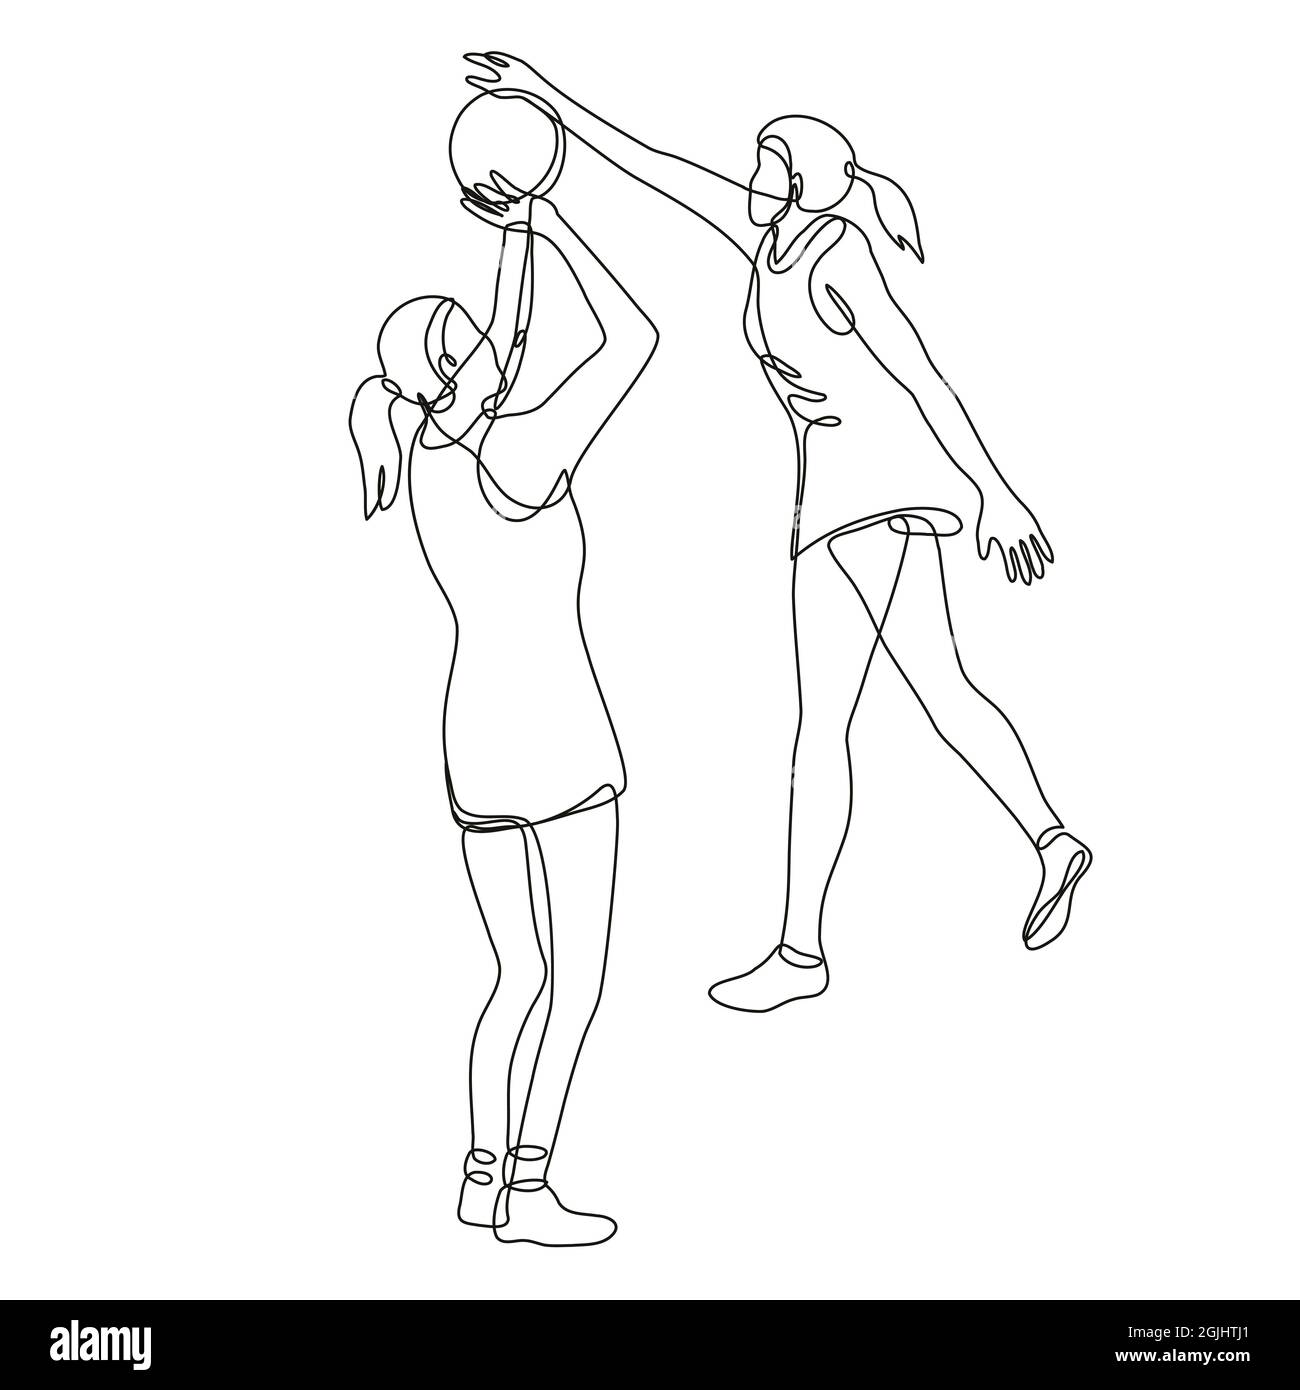 Netball-Spieler Schießen und Blockieren des Balls kontinuierliche Linienzeichnung Stockfoto